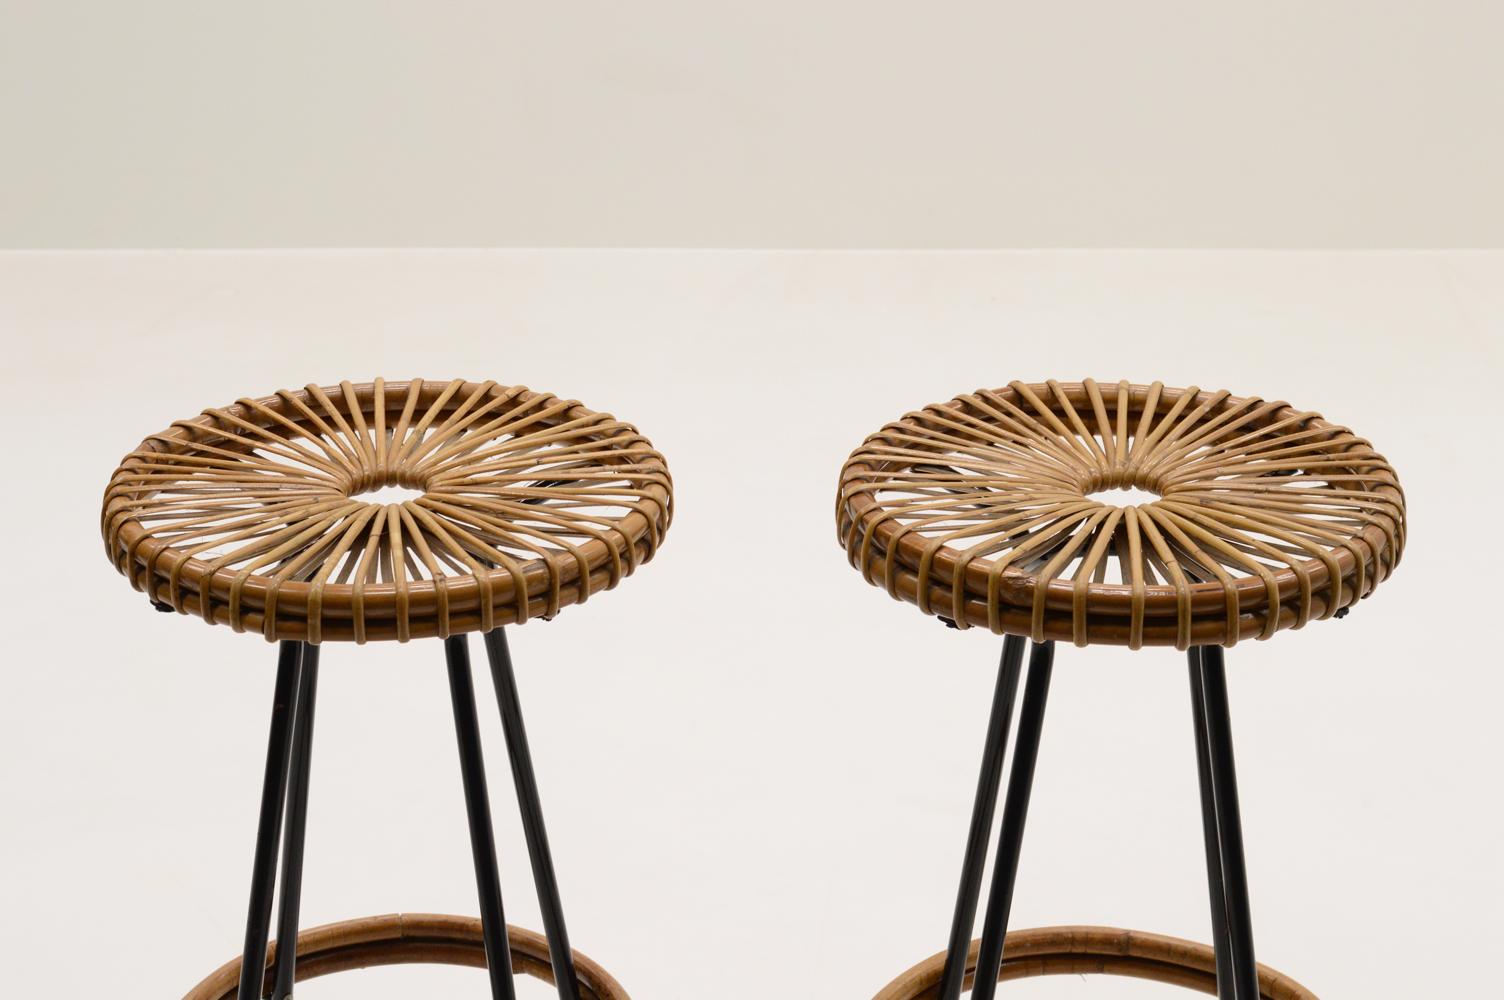 Dutch Set of 2 bar stools by Dirk van Sliedregt for Rohé Noordwolde, 1960s.